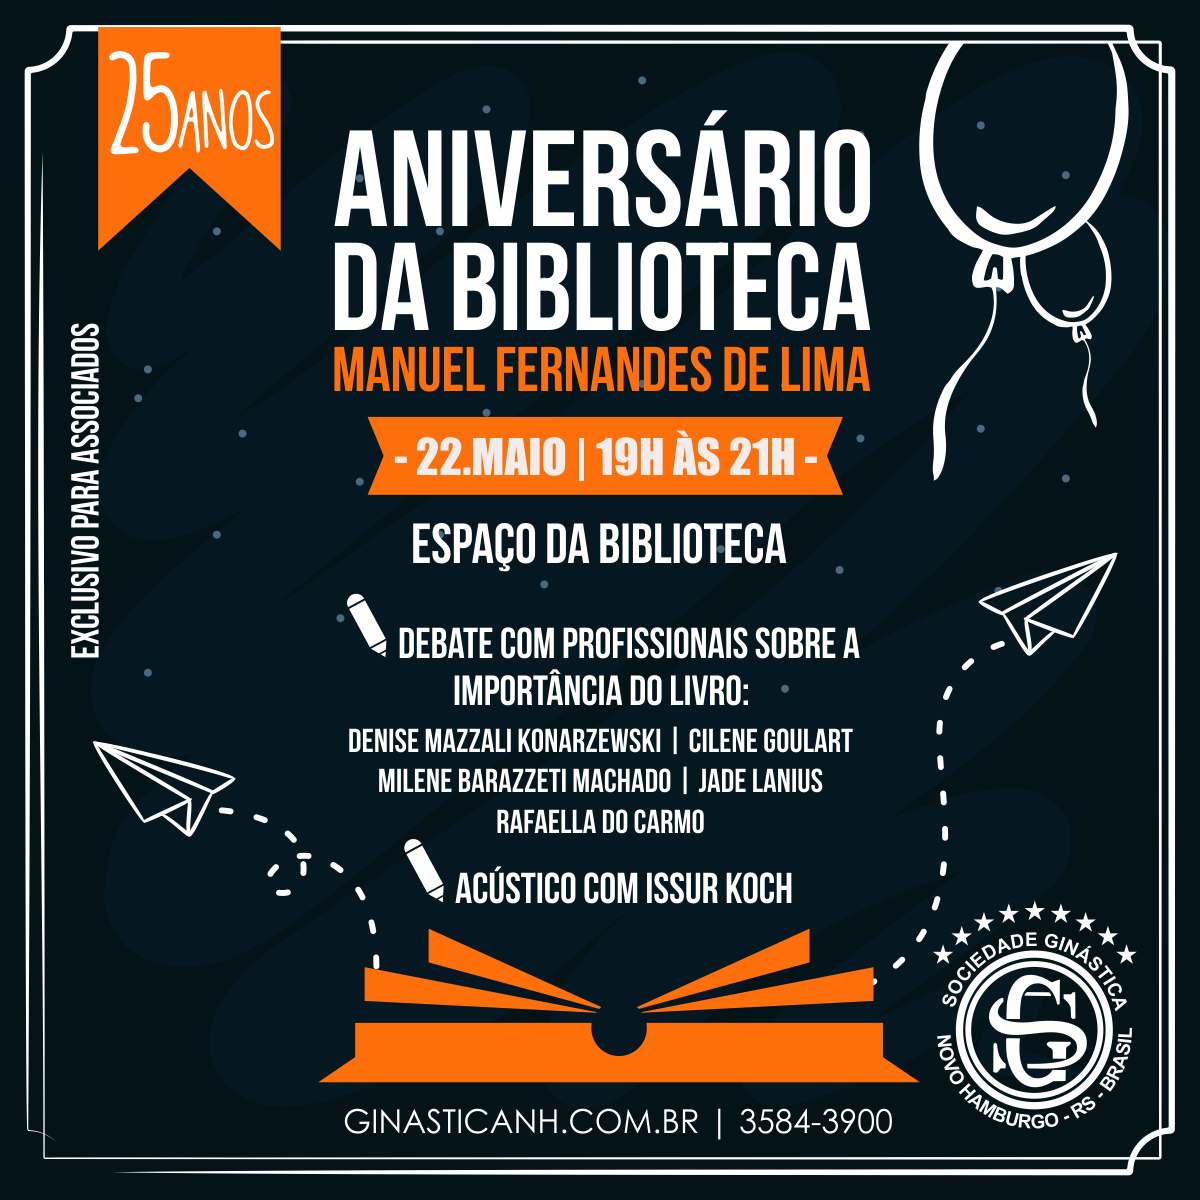 Biblioteca da Ginástica comemora 25 anos